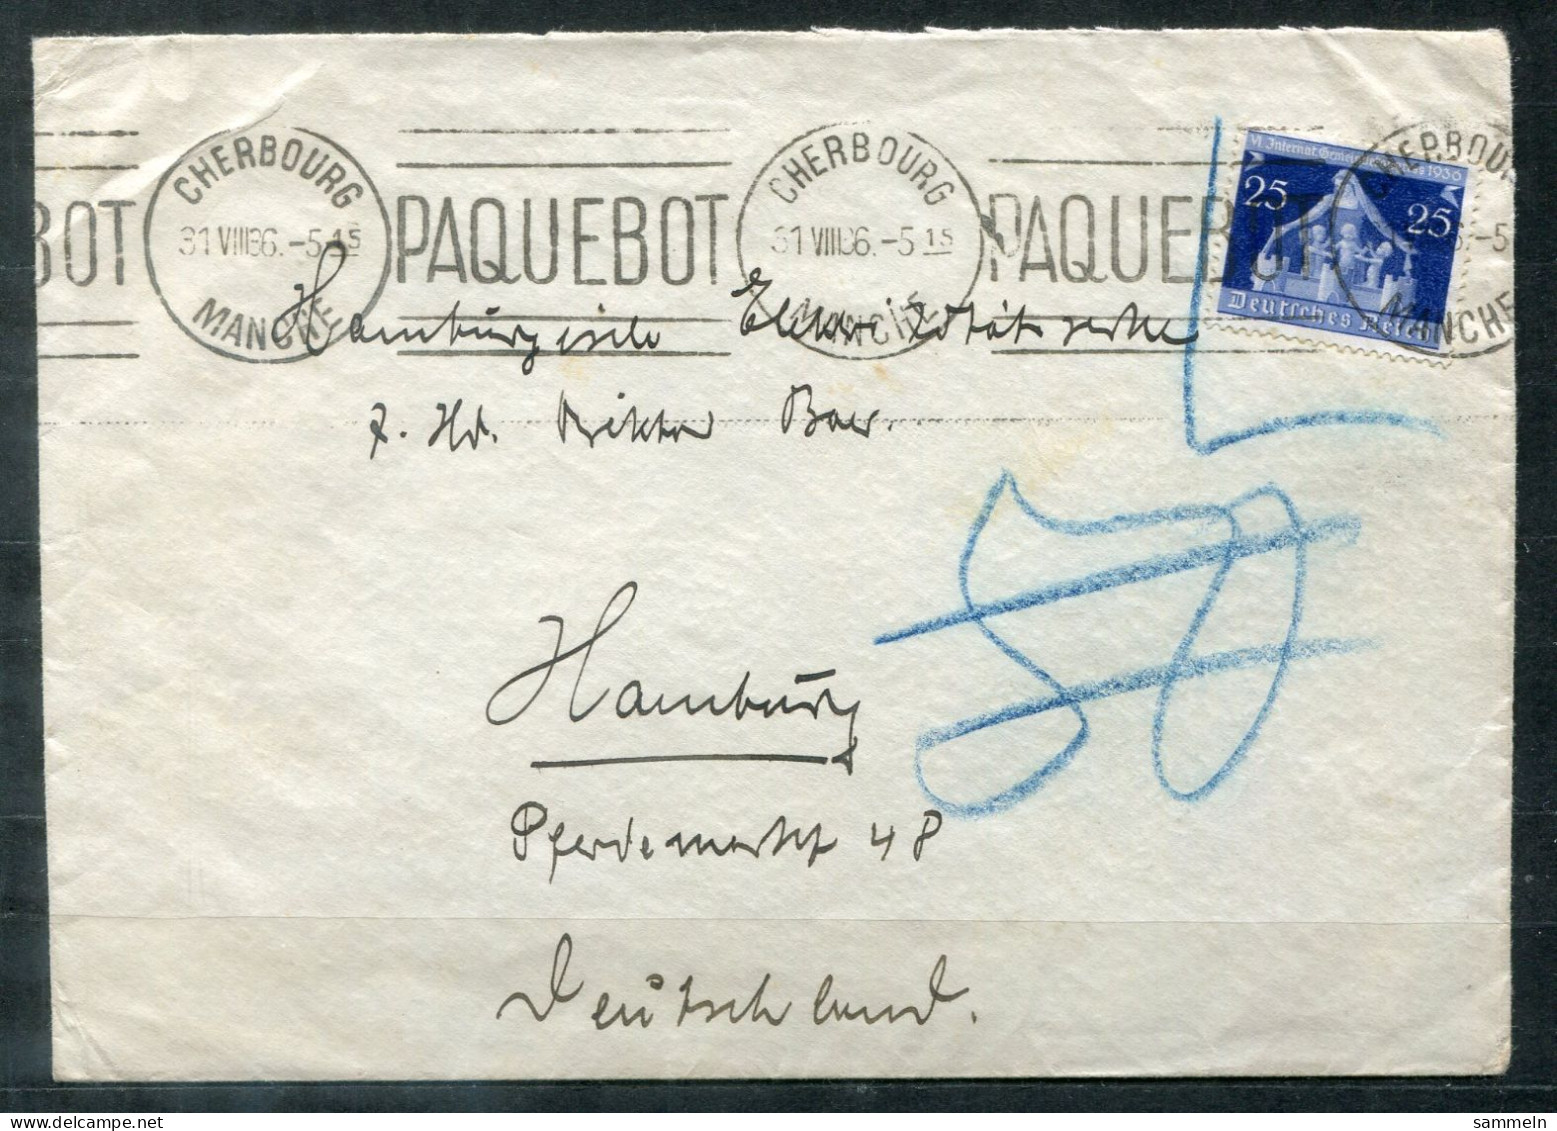 FRANKREICH - Schiffspost, Navire, Ship Letter, Maschinenstempel PAQUEBOT Und CHERBOURG 31.8.1936 Auf NDL-Umschlag - Lettres & Documents